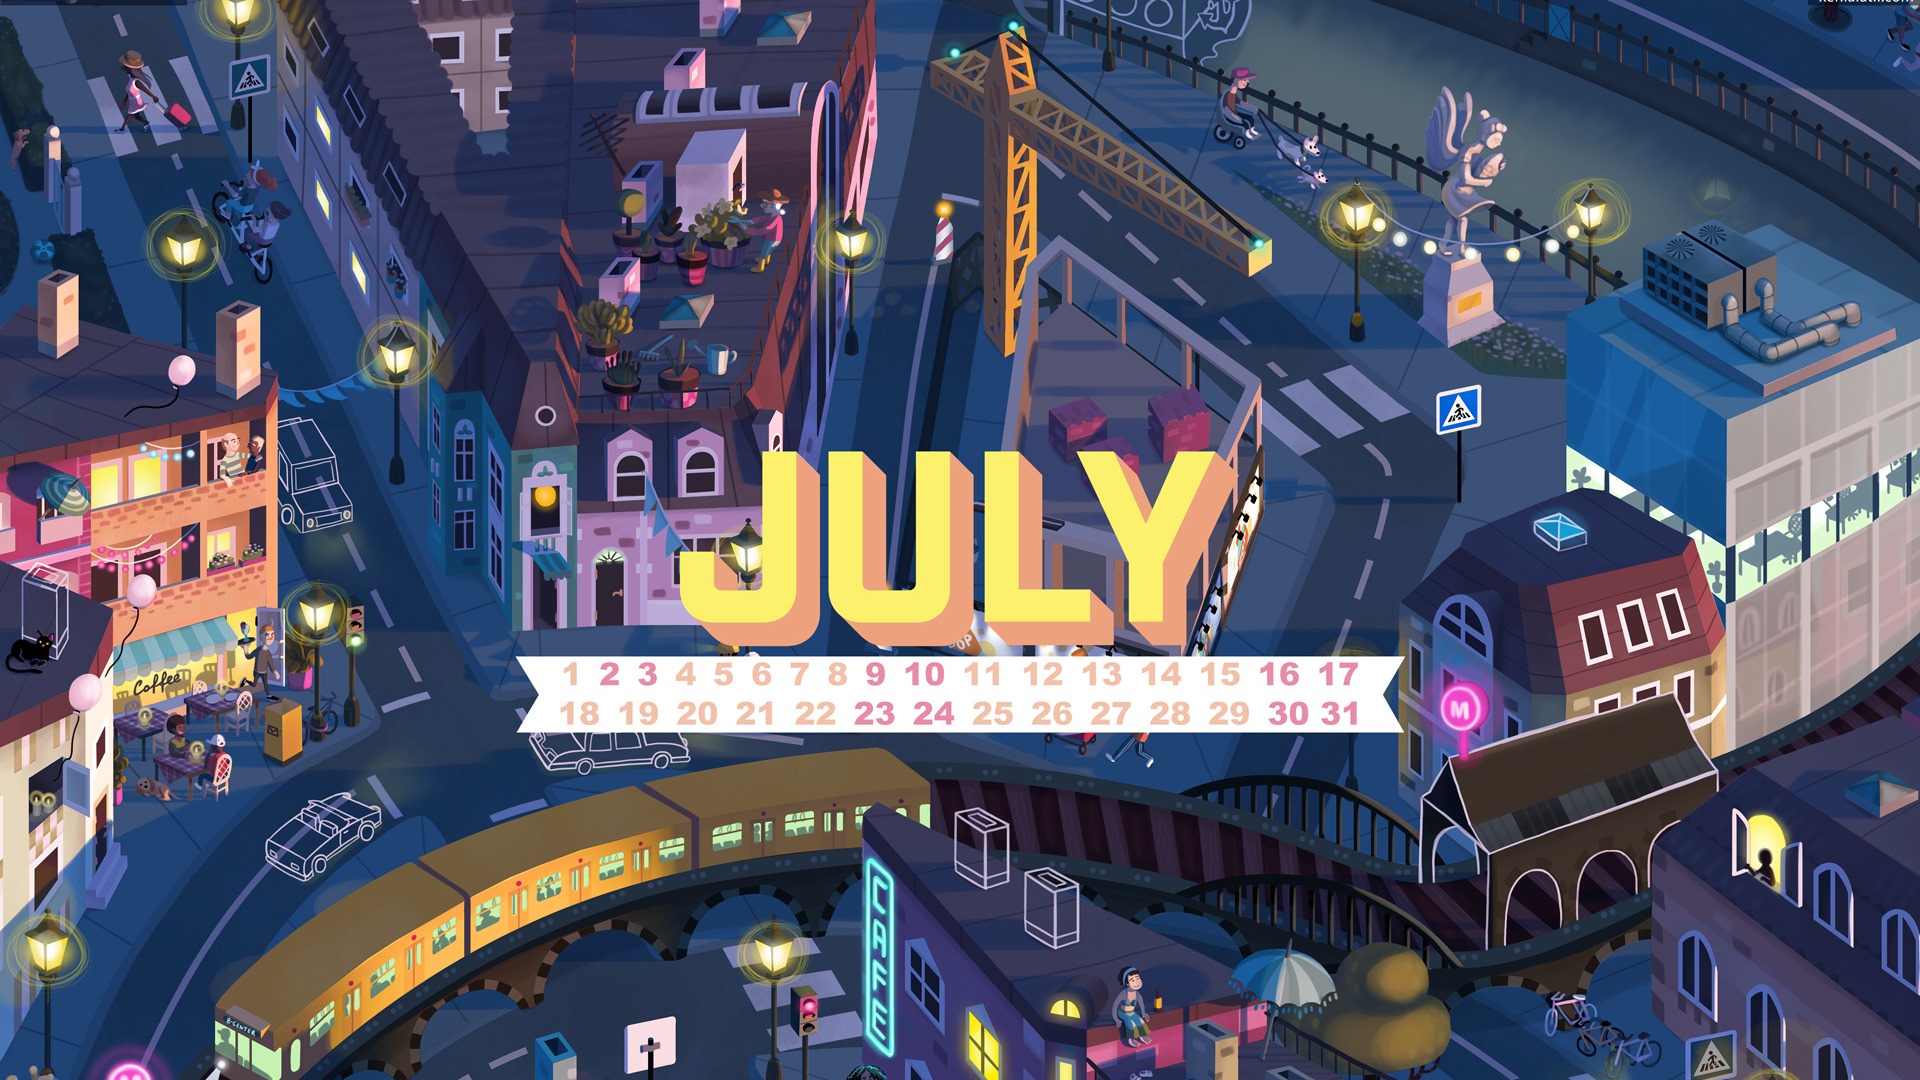 July 2016 calendar wallpaper (1) #1 - 1920x1080